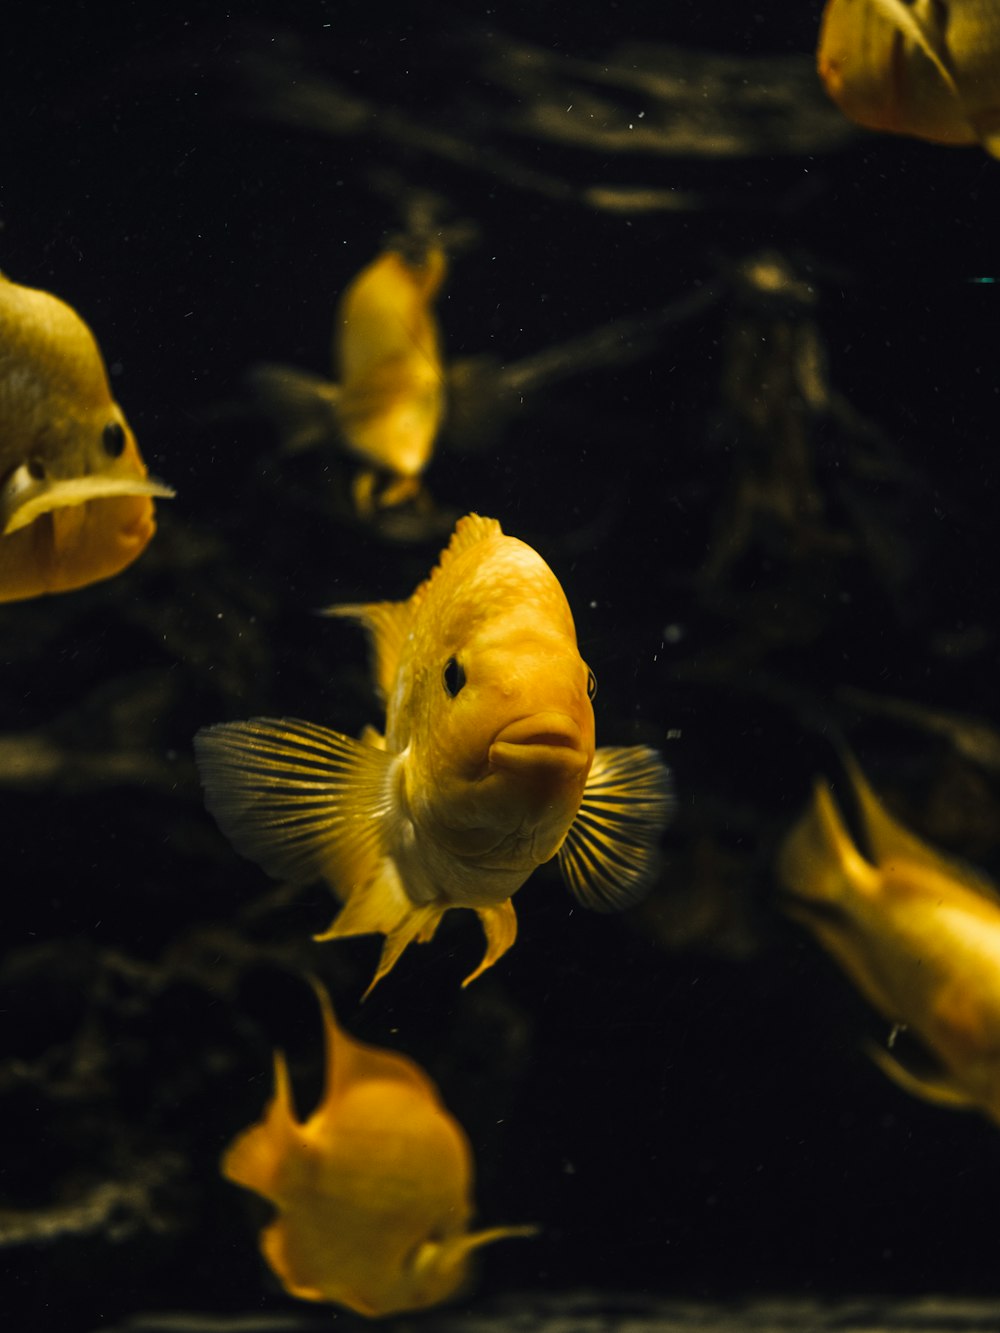 pesci gialli e bianchi nell'acqua